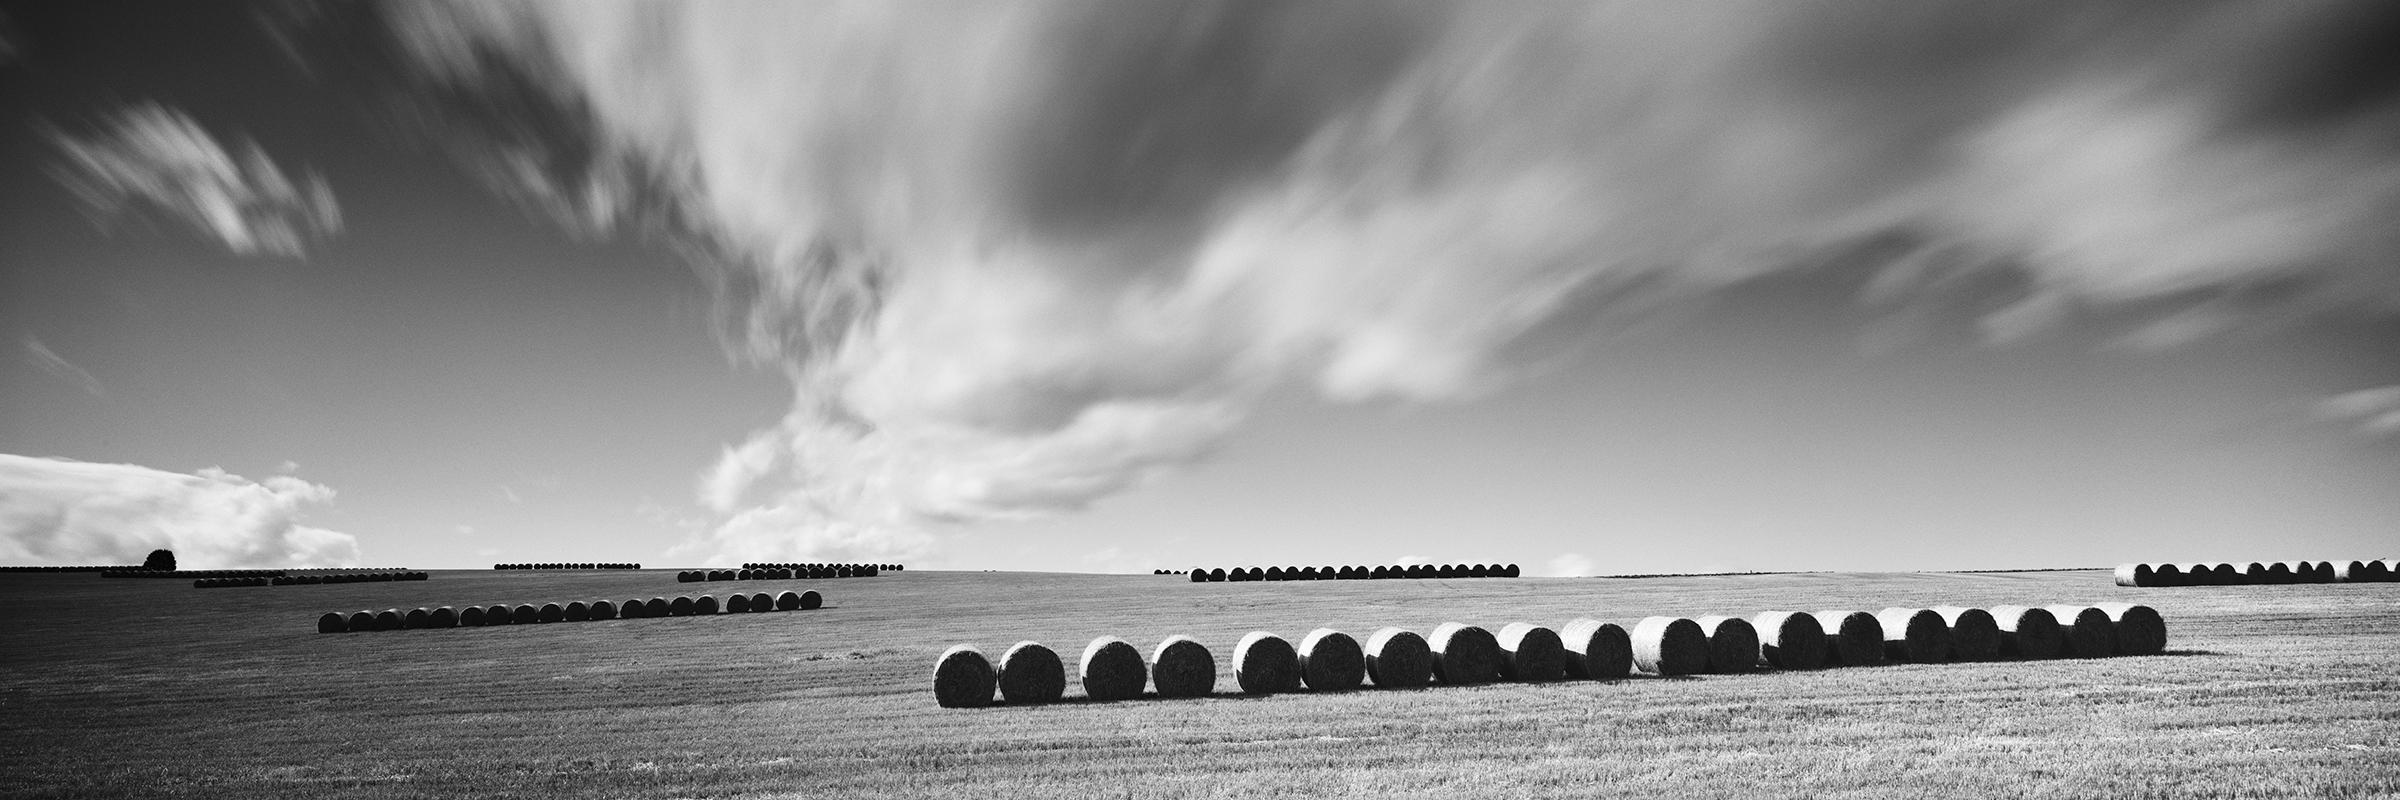 Black and White Photograph Gerald Berghammer - M. Monk Panorama, terres agricoles, bottes de paille, photo de paysage en noir et blanc.